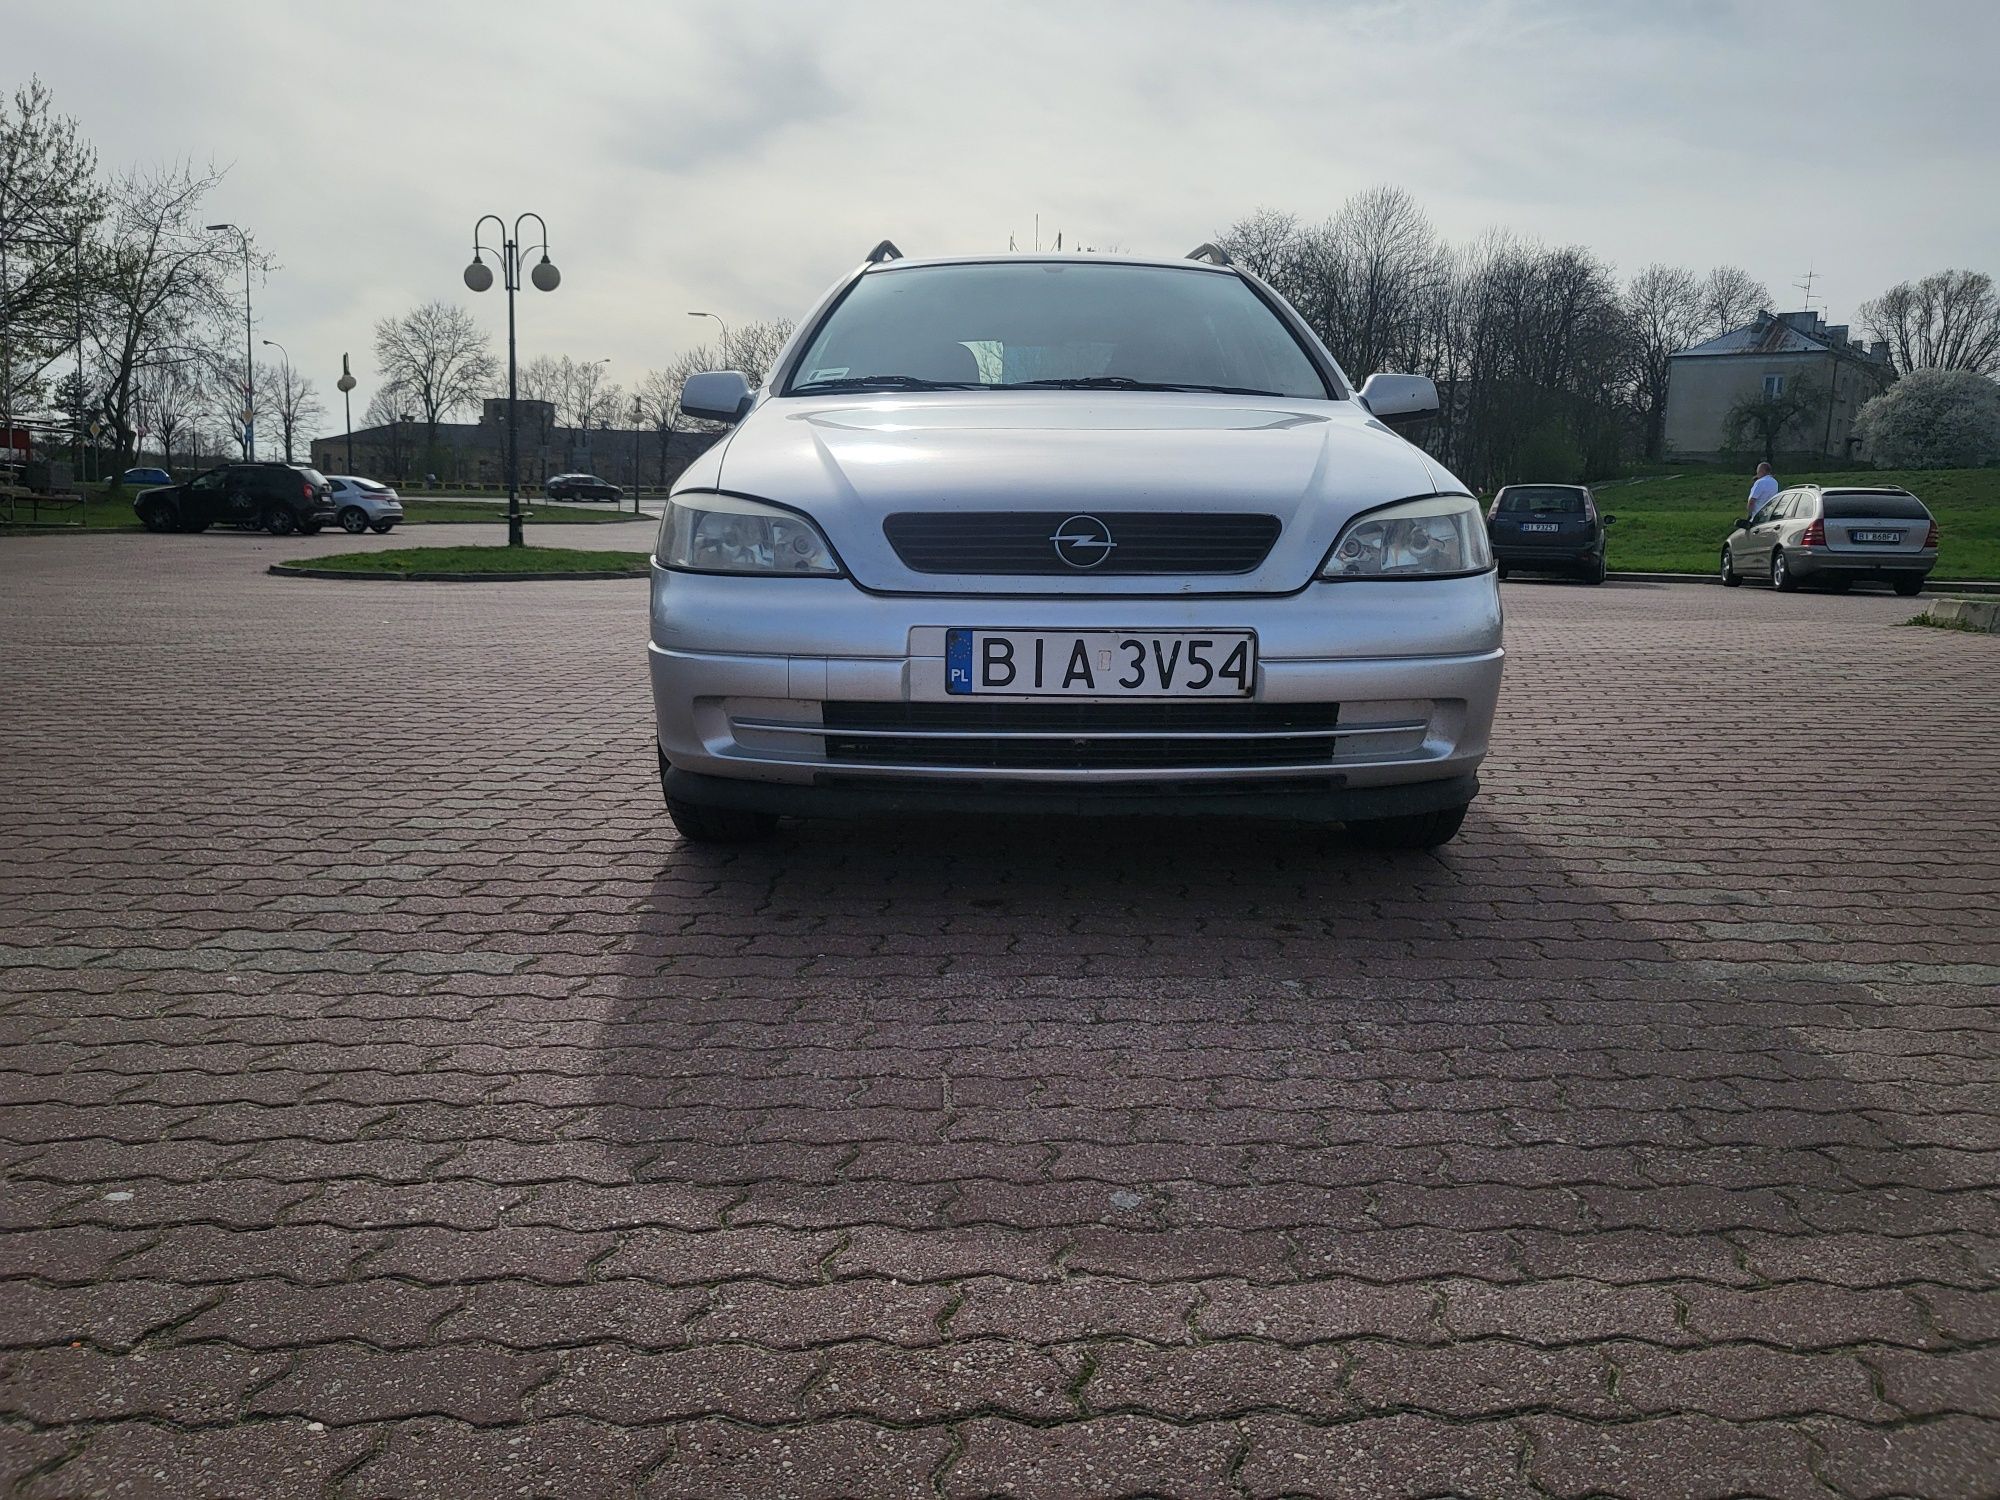 Opel Astra 2.0 HDI | Hak | Kombi | Klima | el. Szyby | Okazja!